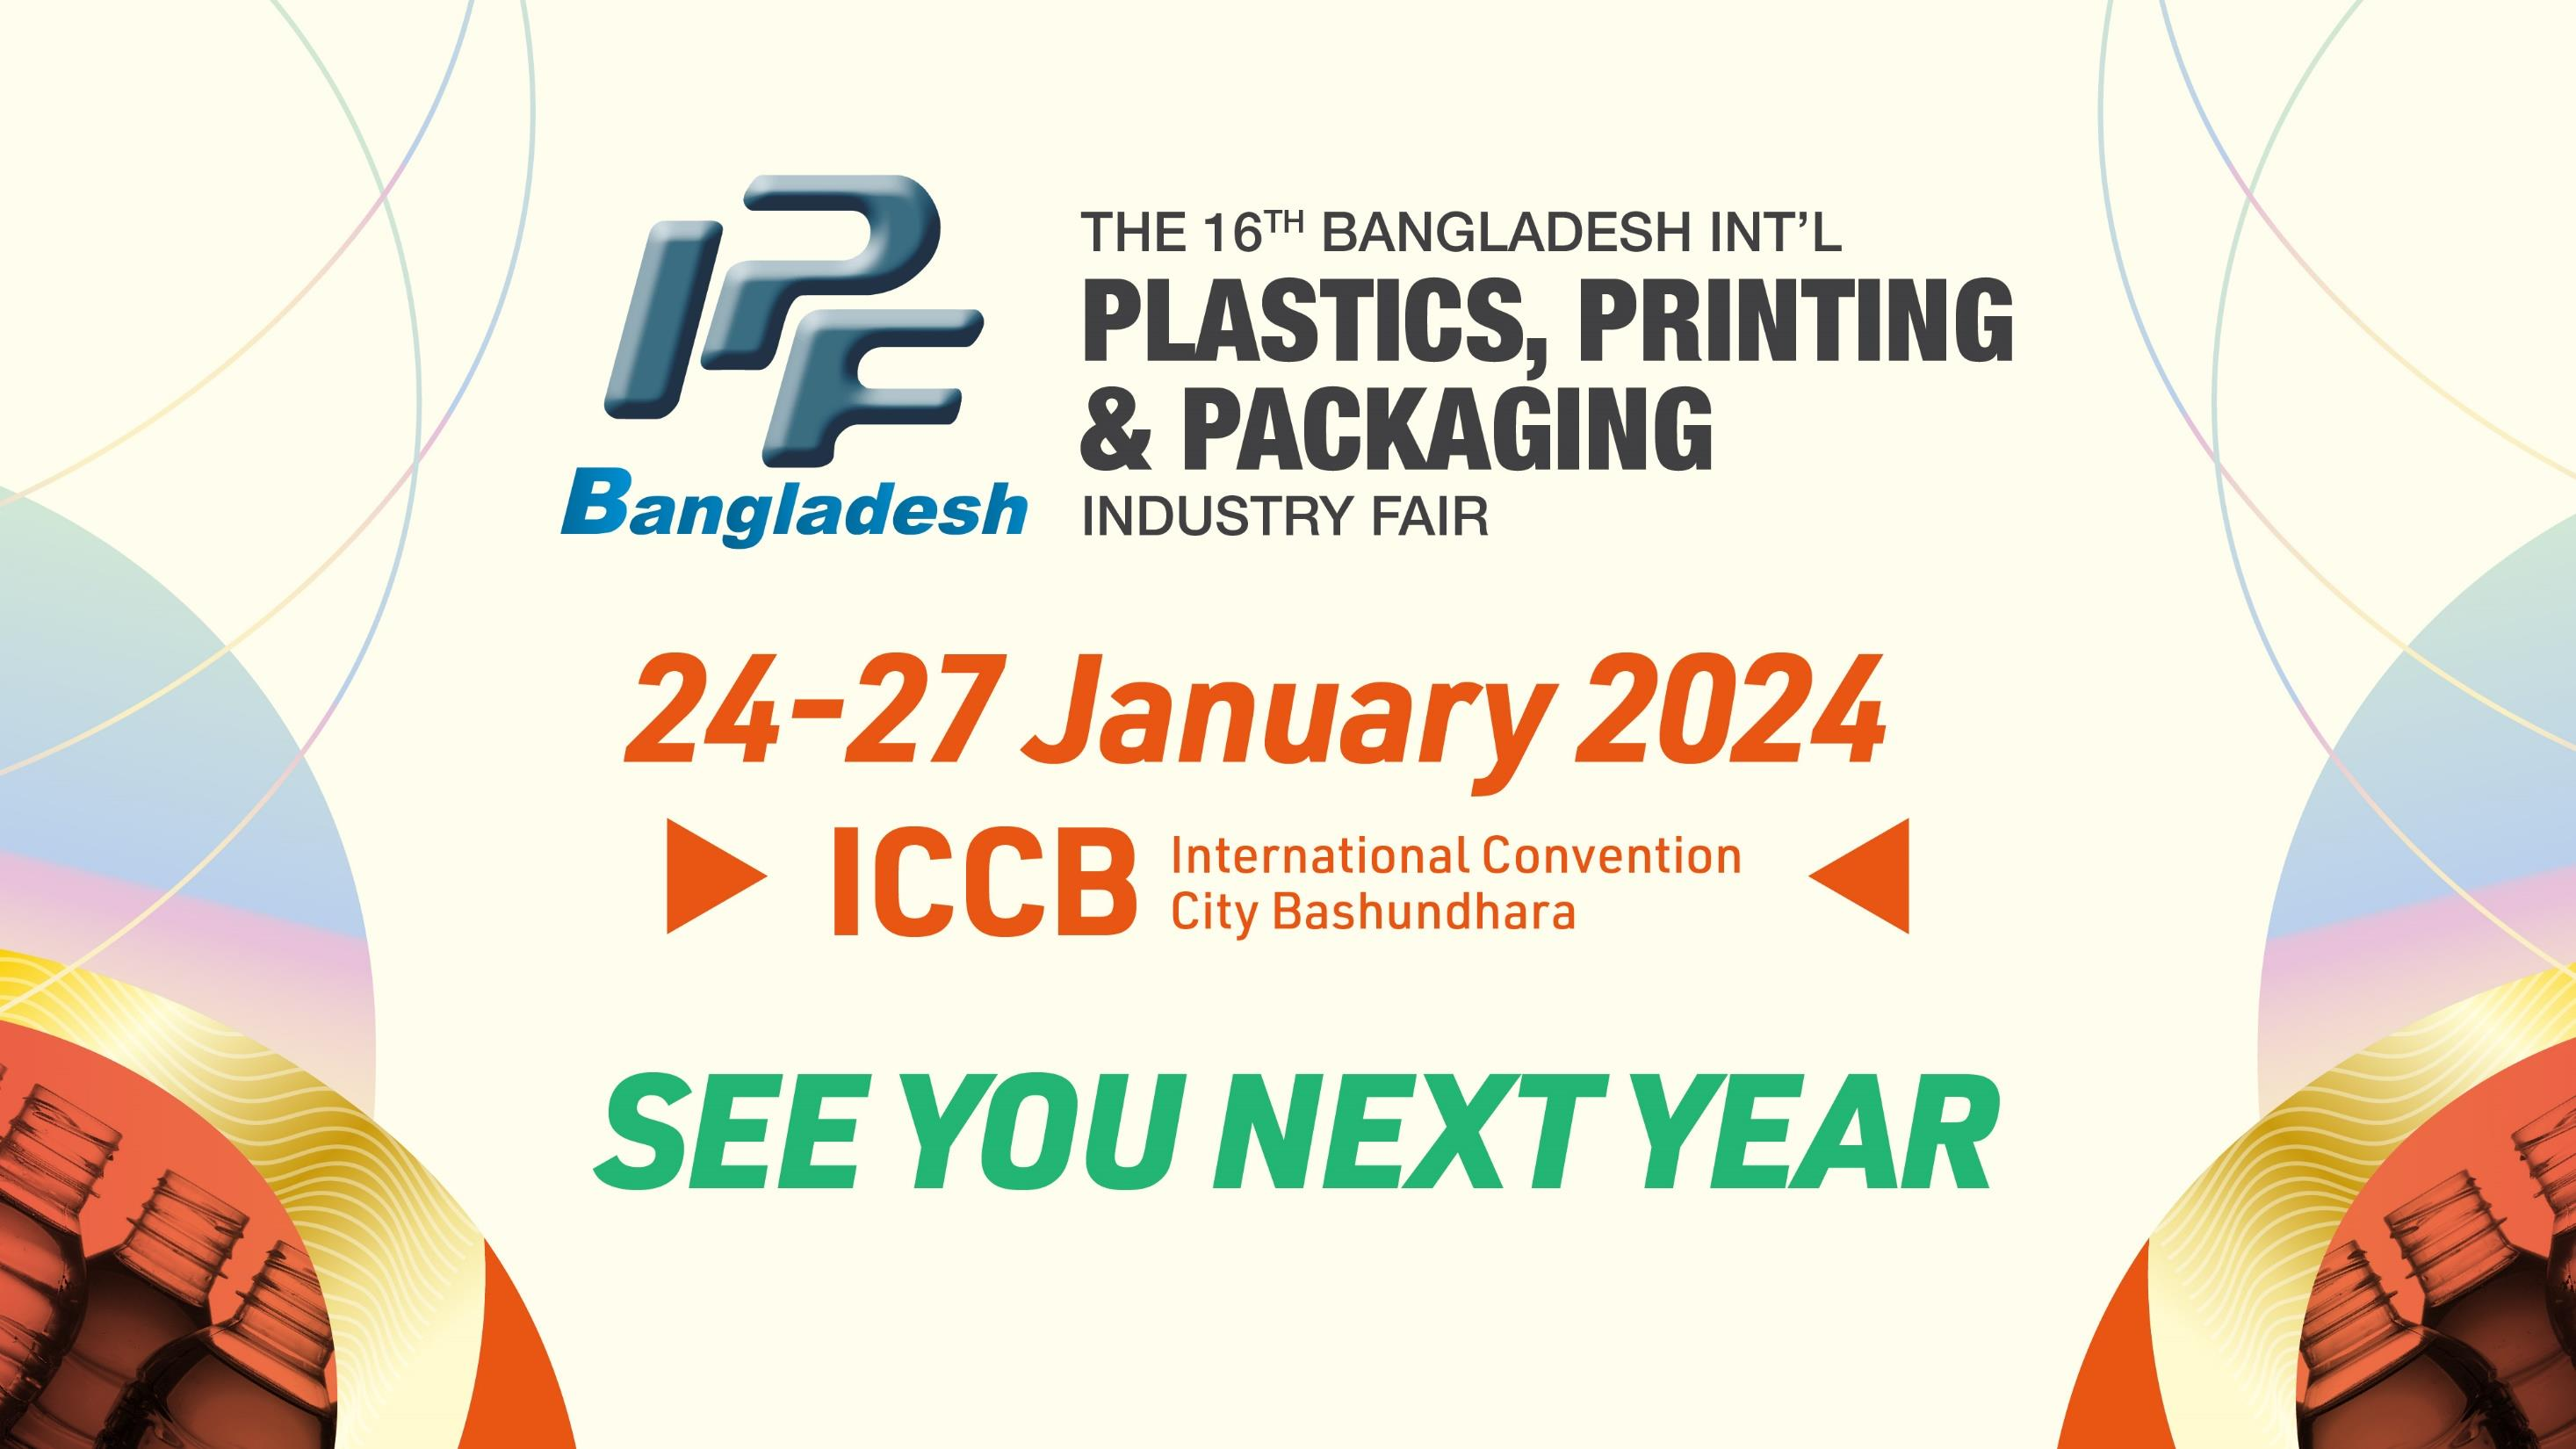 2024 پلاستیک شانزدهم بنگلادش ، لاستیک ، چاپ و بسته بندی نمایشگاه صنعتی